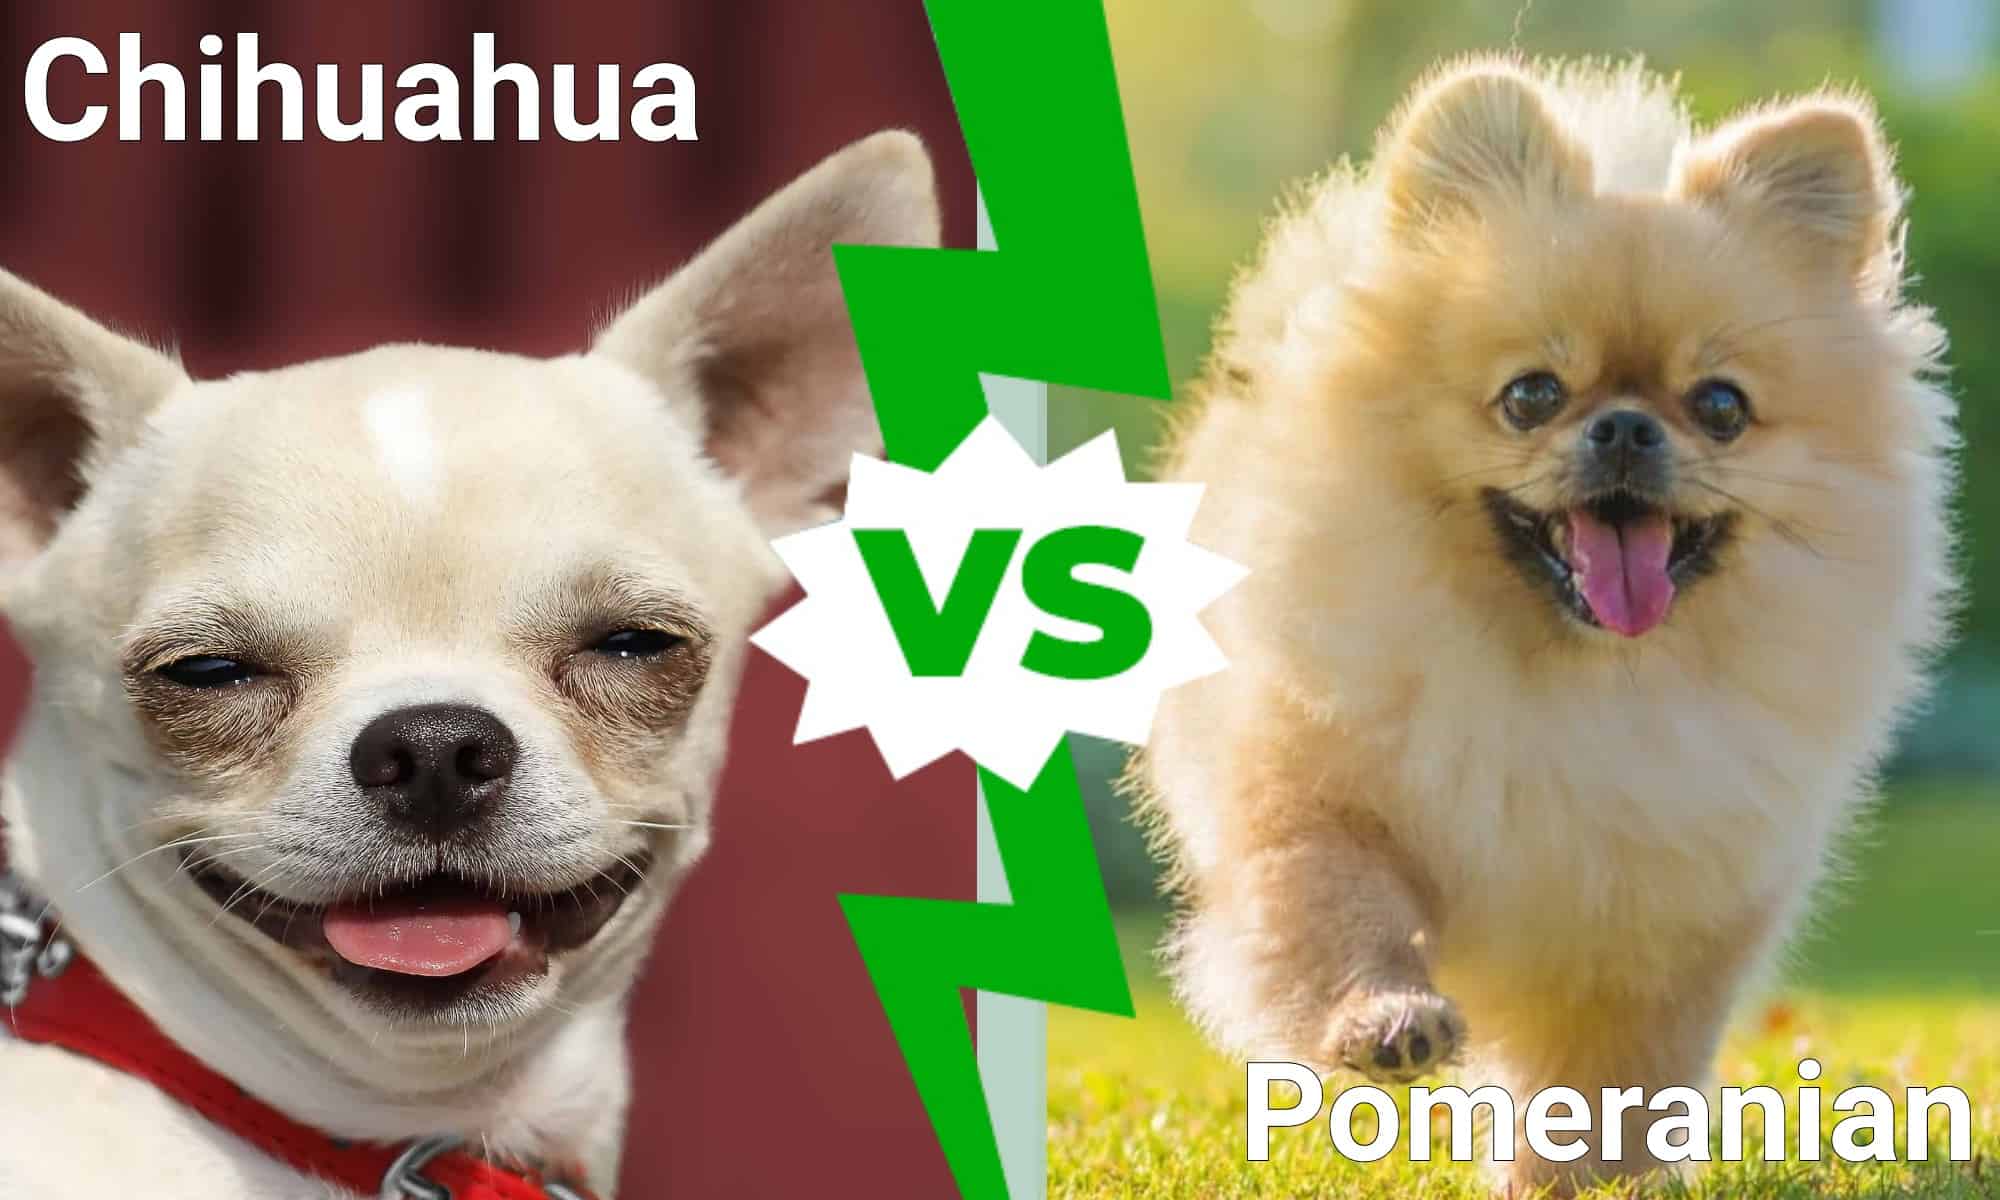 Chihuahua vs. Pomeranian